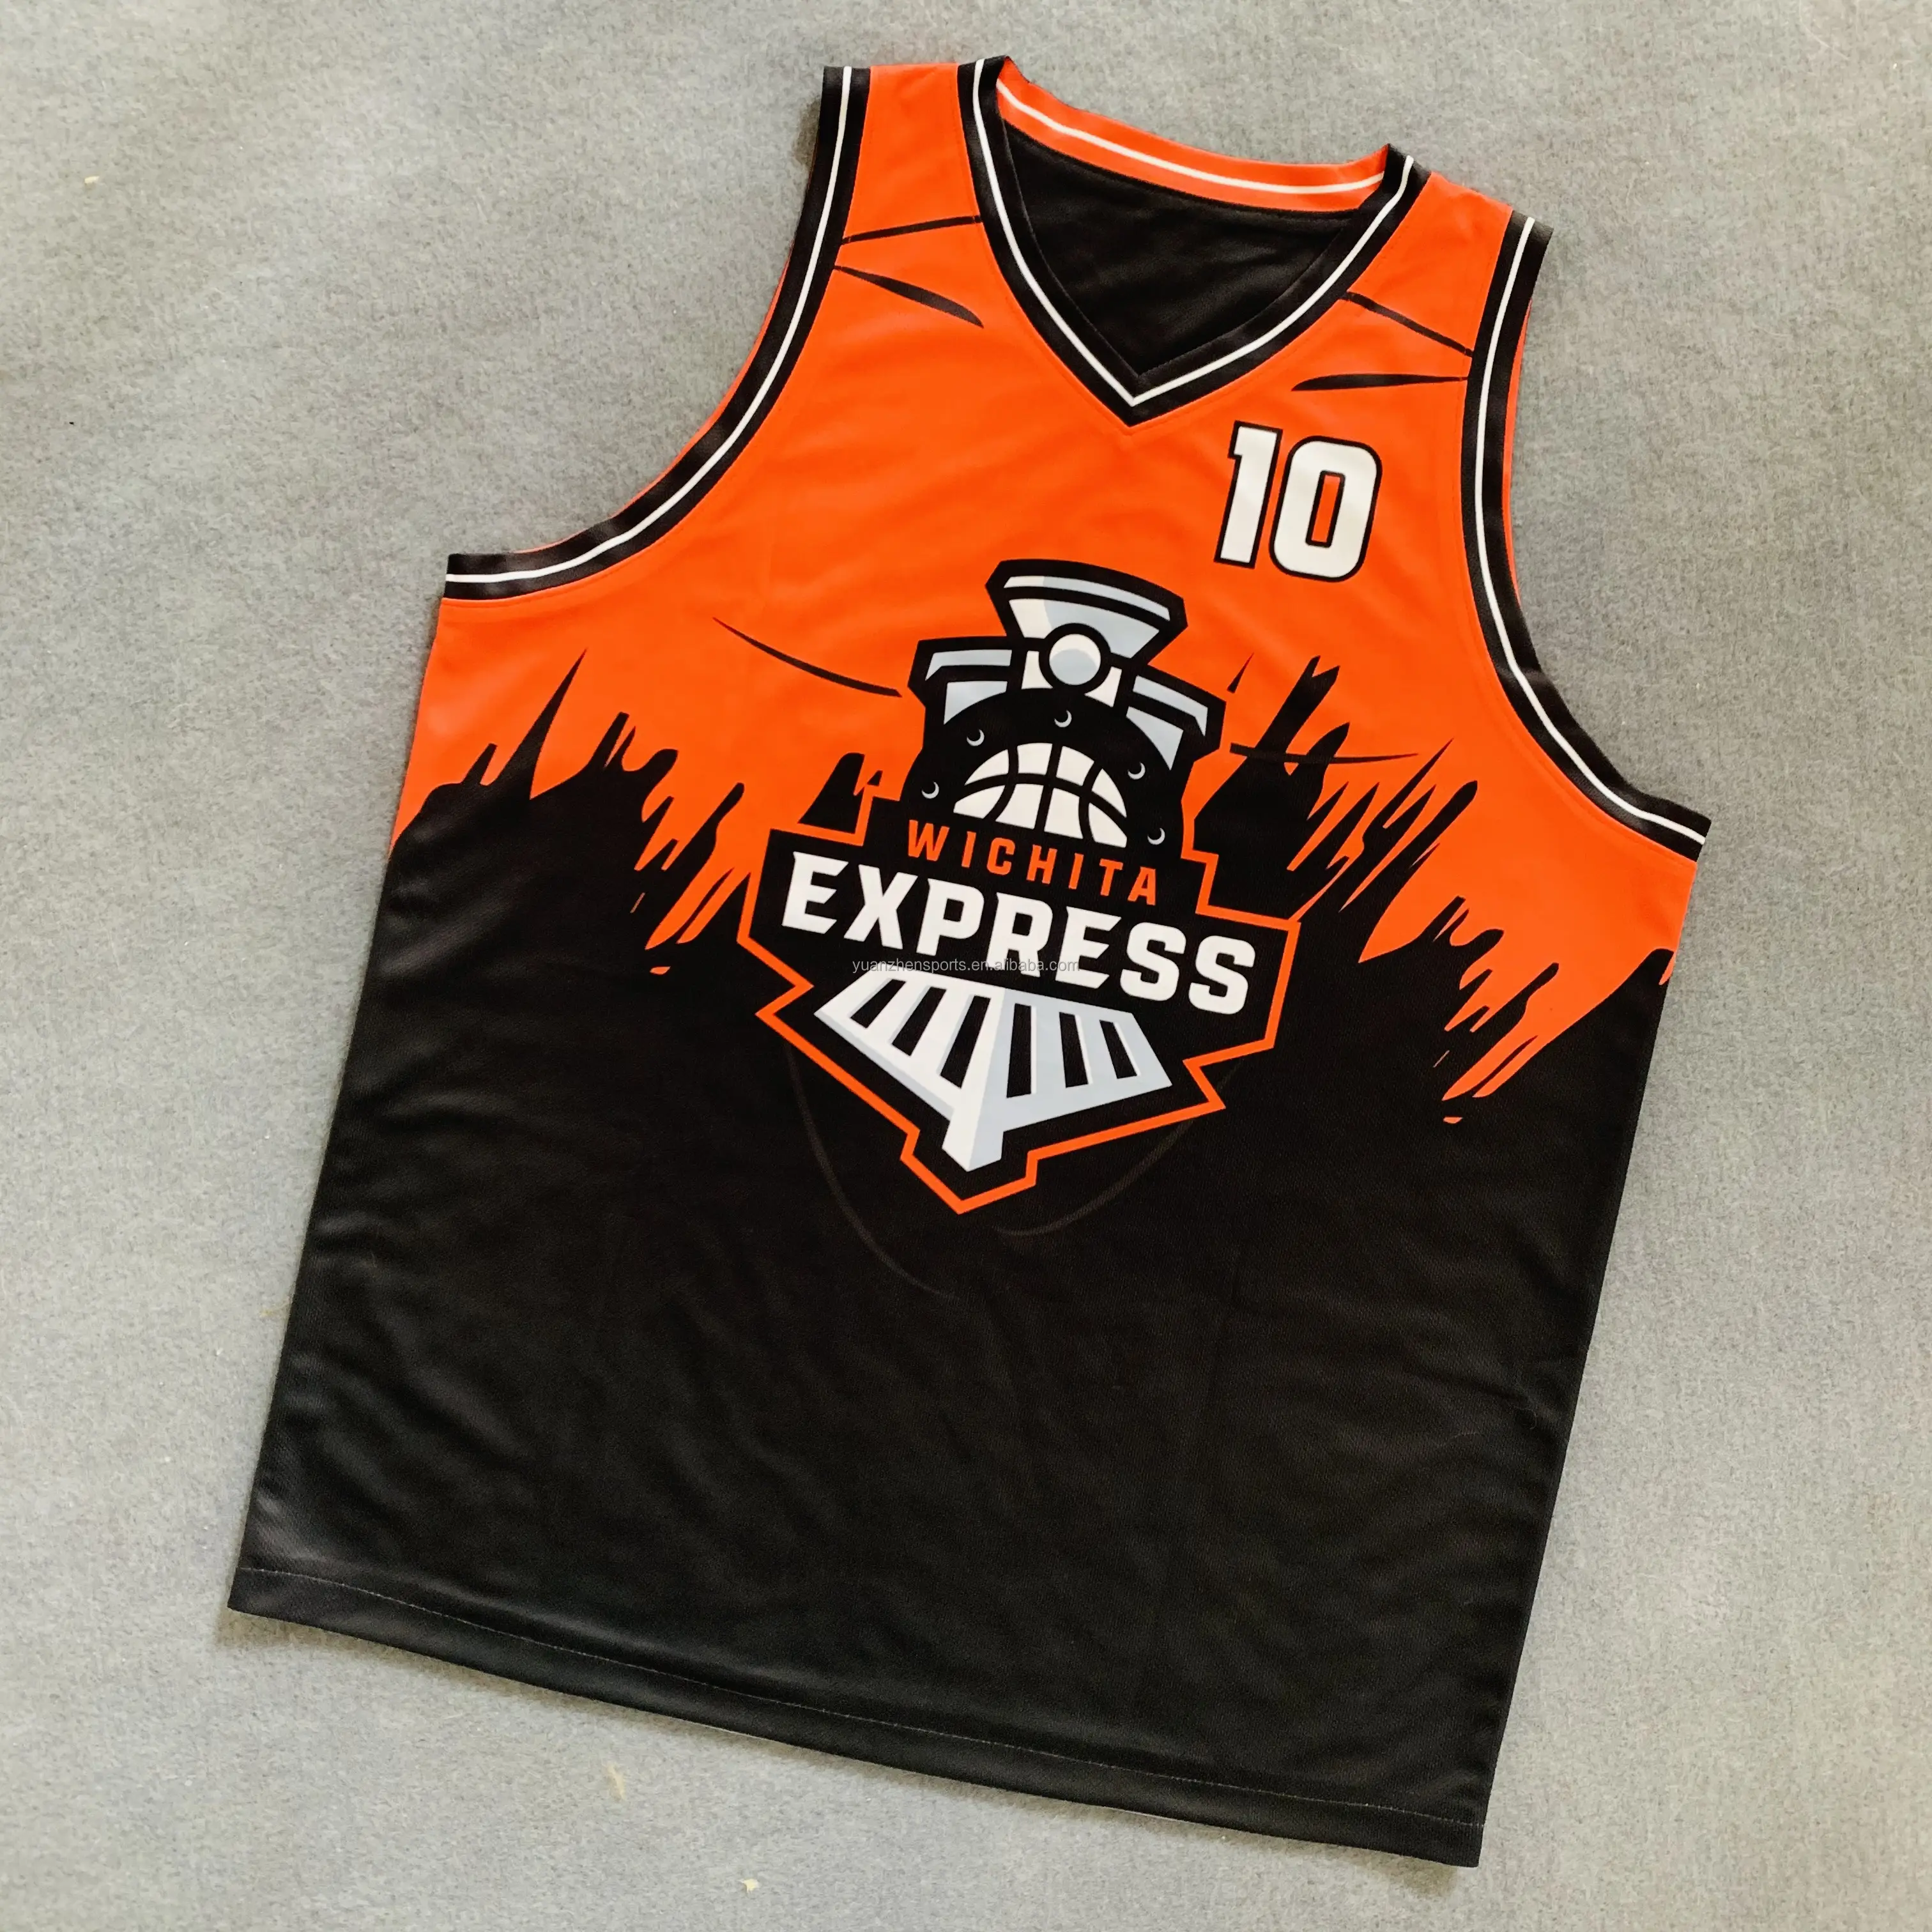 Camisa de basquete personalizada Fll de alta qualidade para adultos, roupa esportiva de secagem rápida com técnica de estampagem, com nome da equipe, pode ser cara